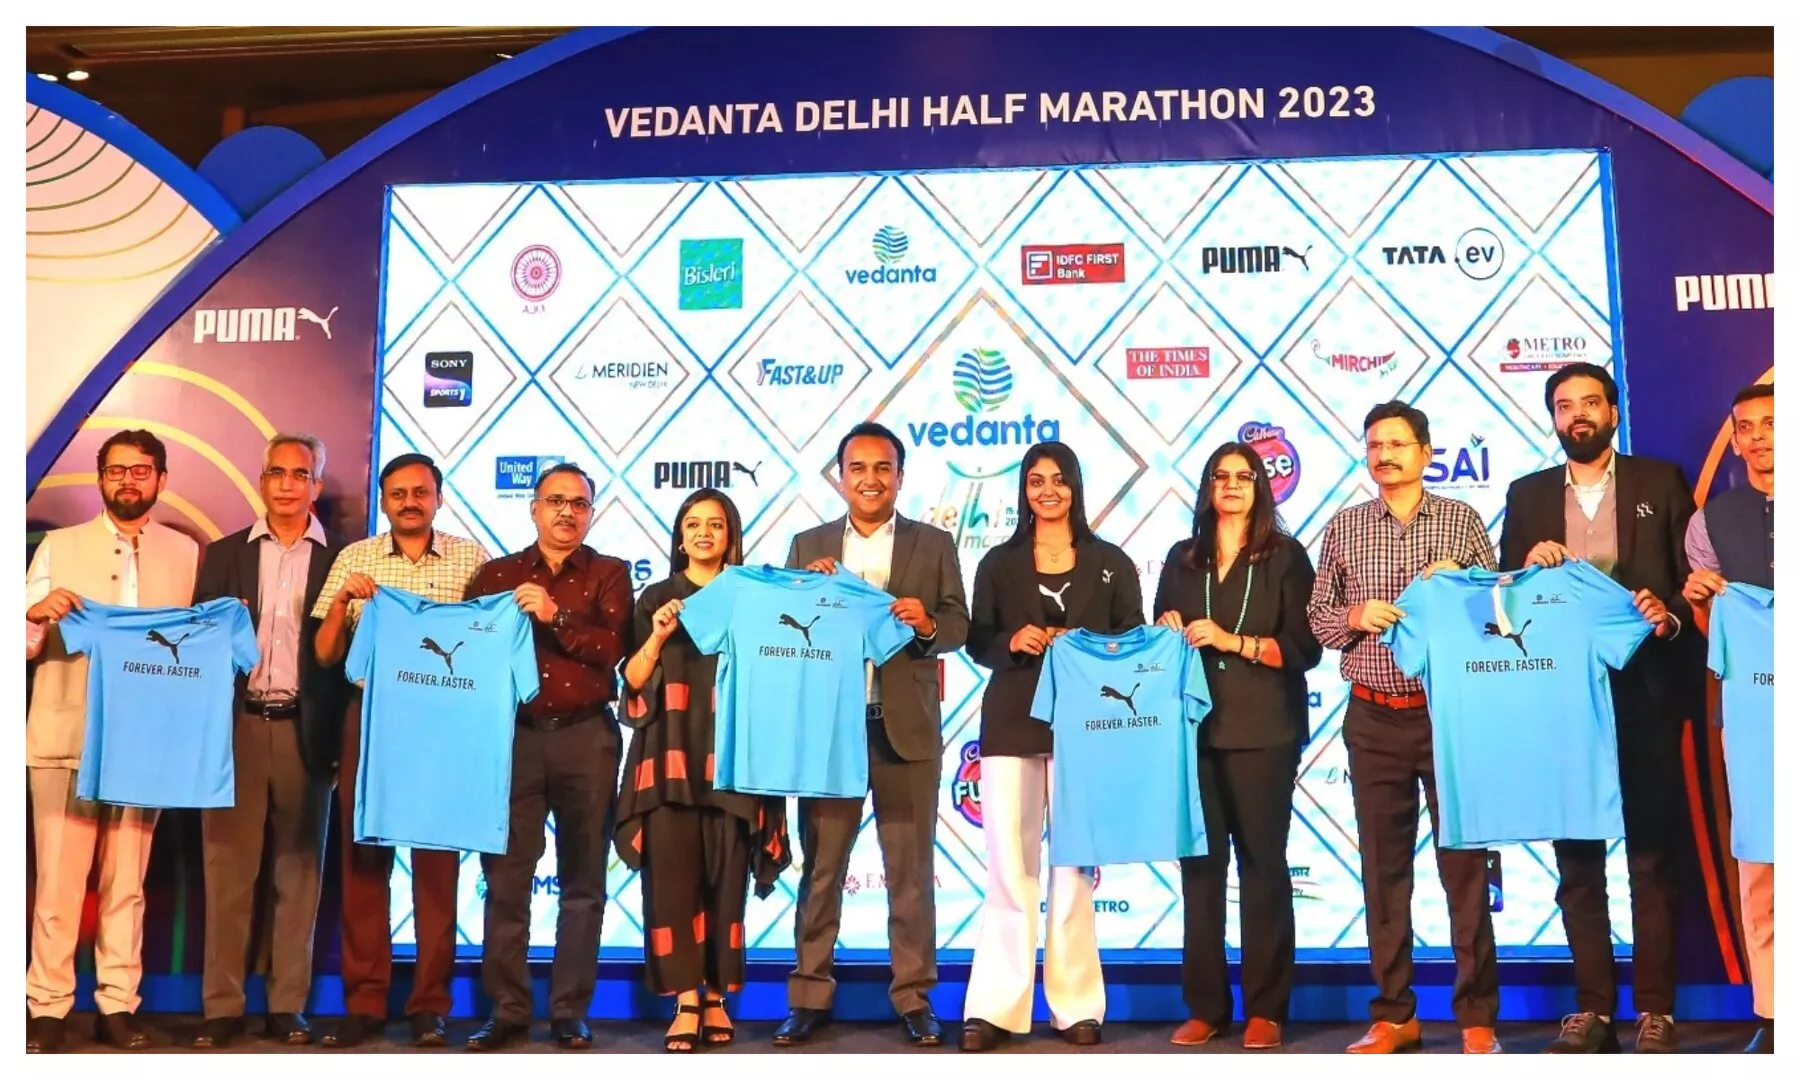 Harleen Deol lauds Vedanta Delhi Half Marathon event